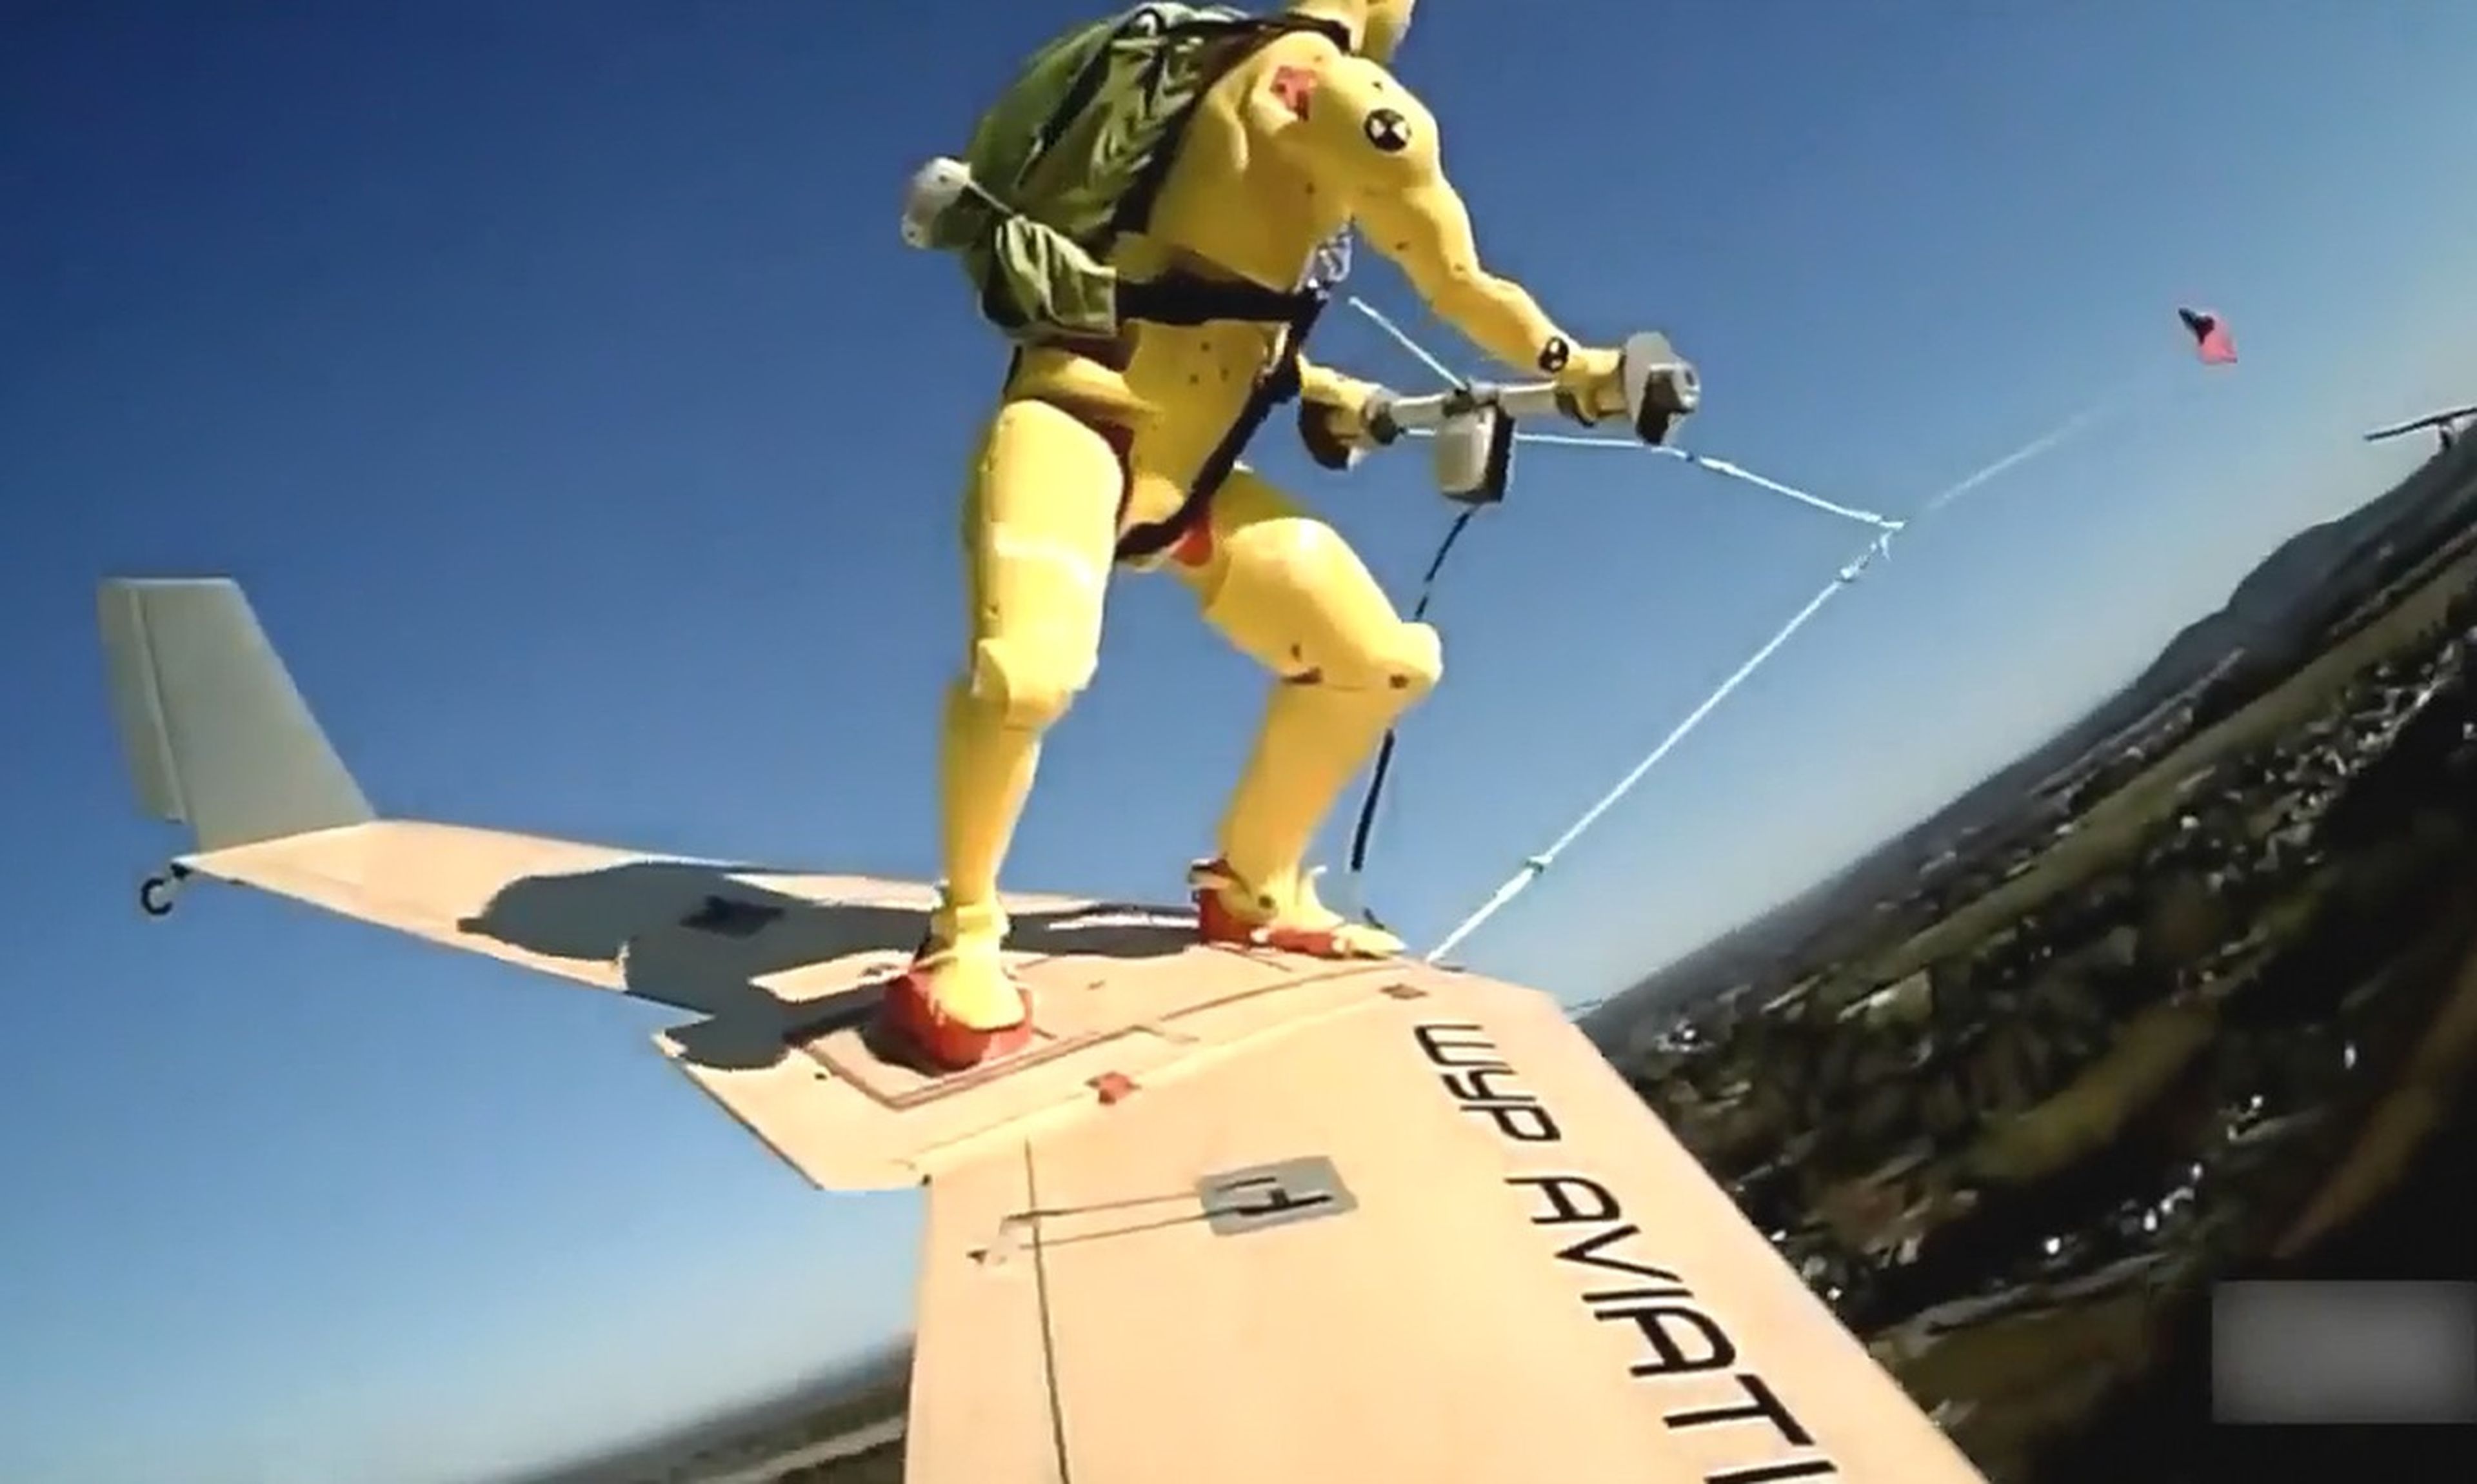 Esquí aéreo, el aerodeslizador del duende verde